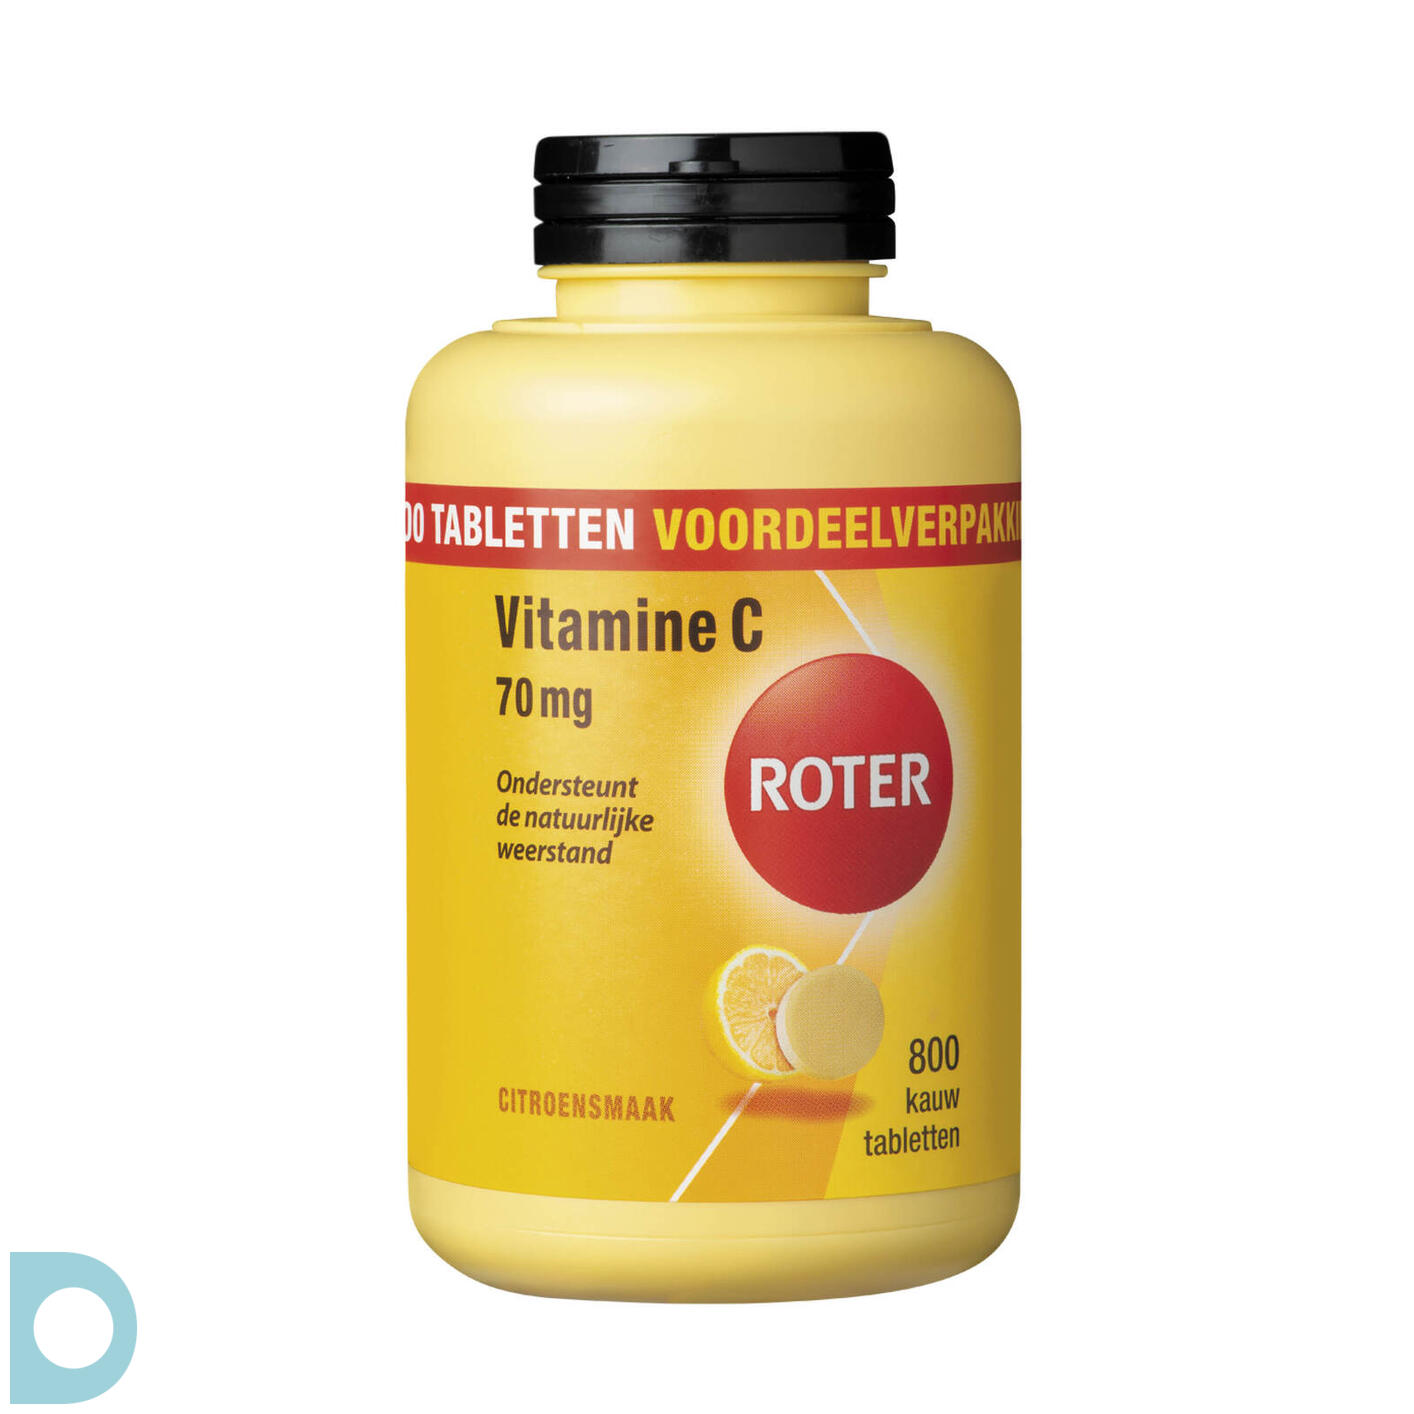 Lodge Opvoeding sla Roter Vitamine C 70mg Kauwtabletten | De Online Drogist